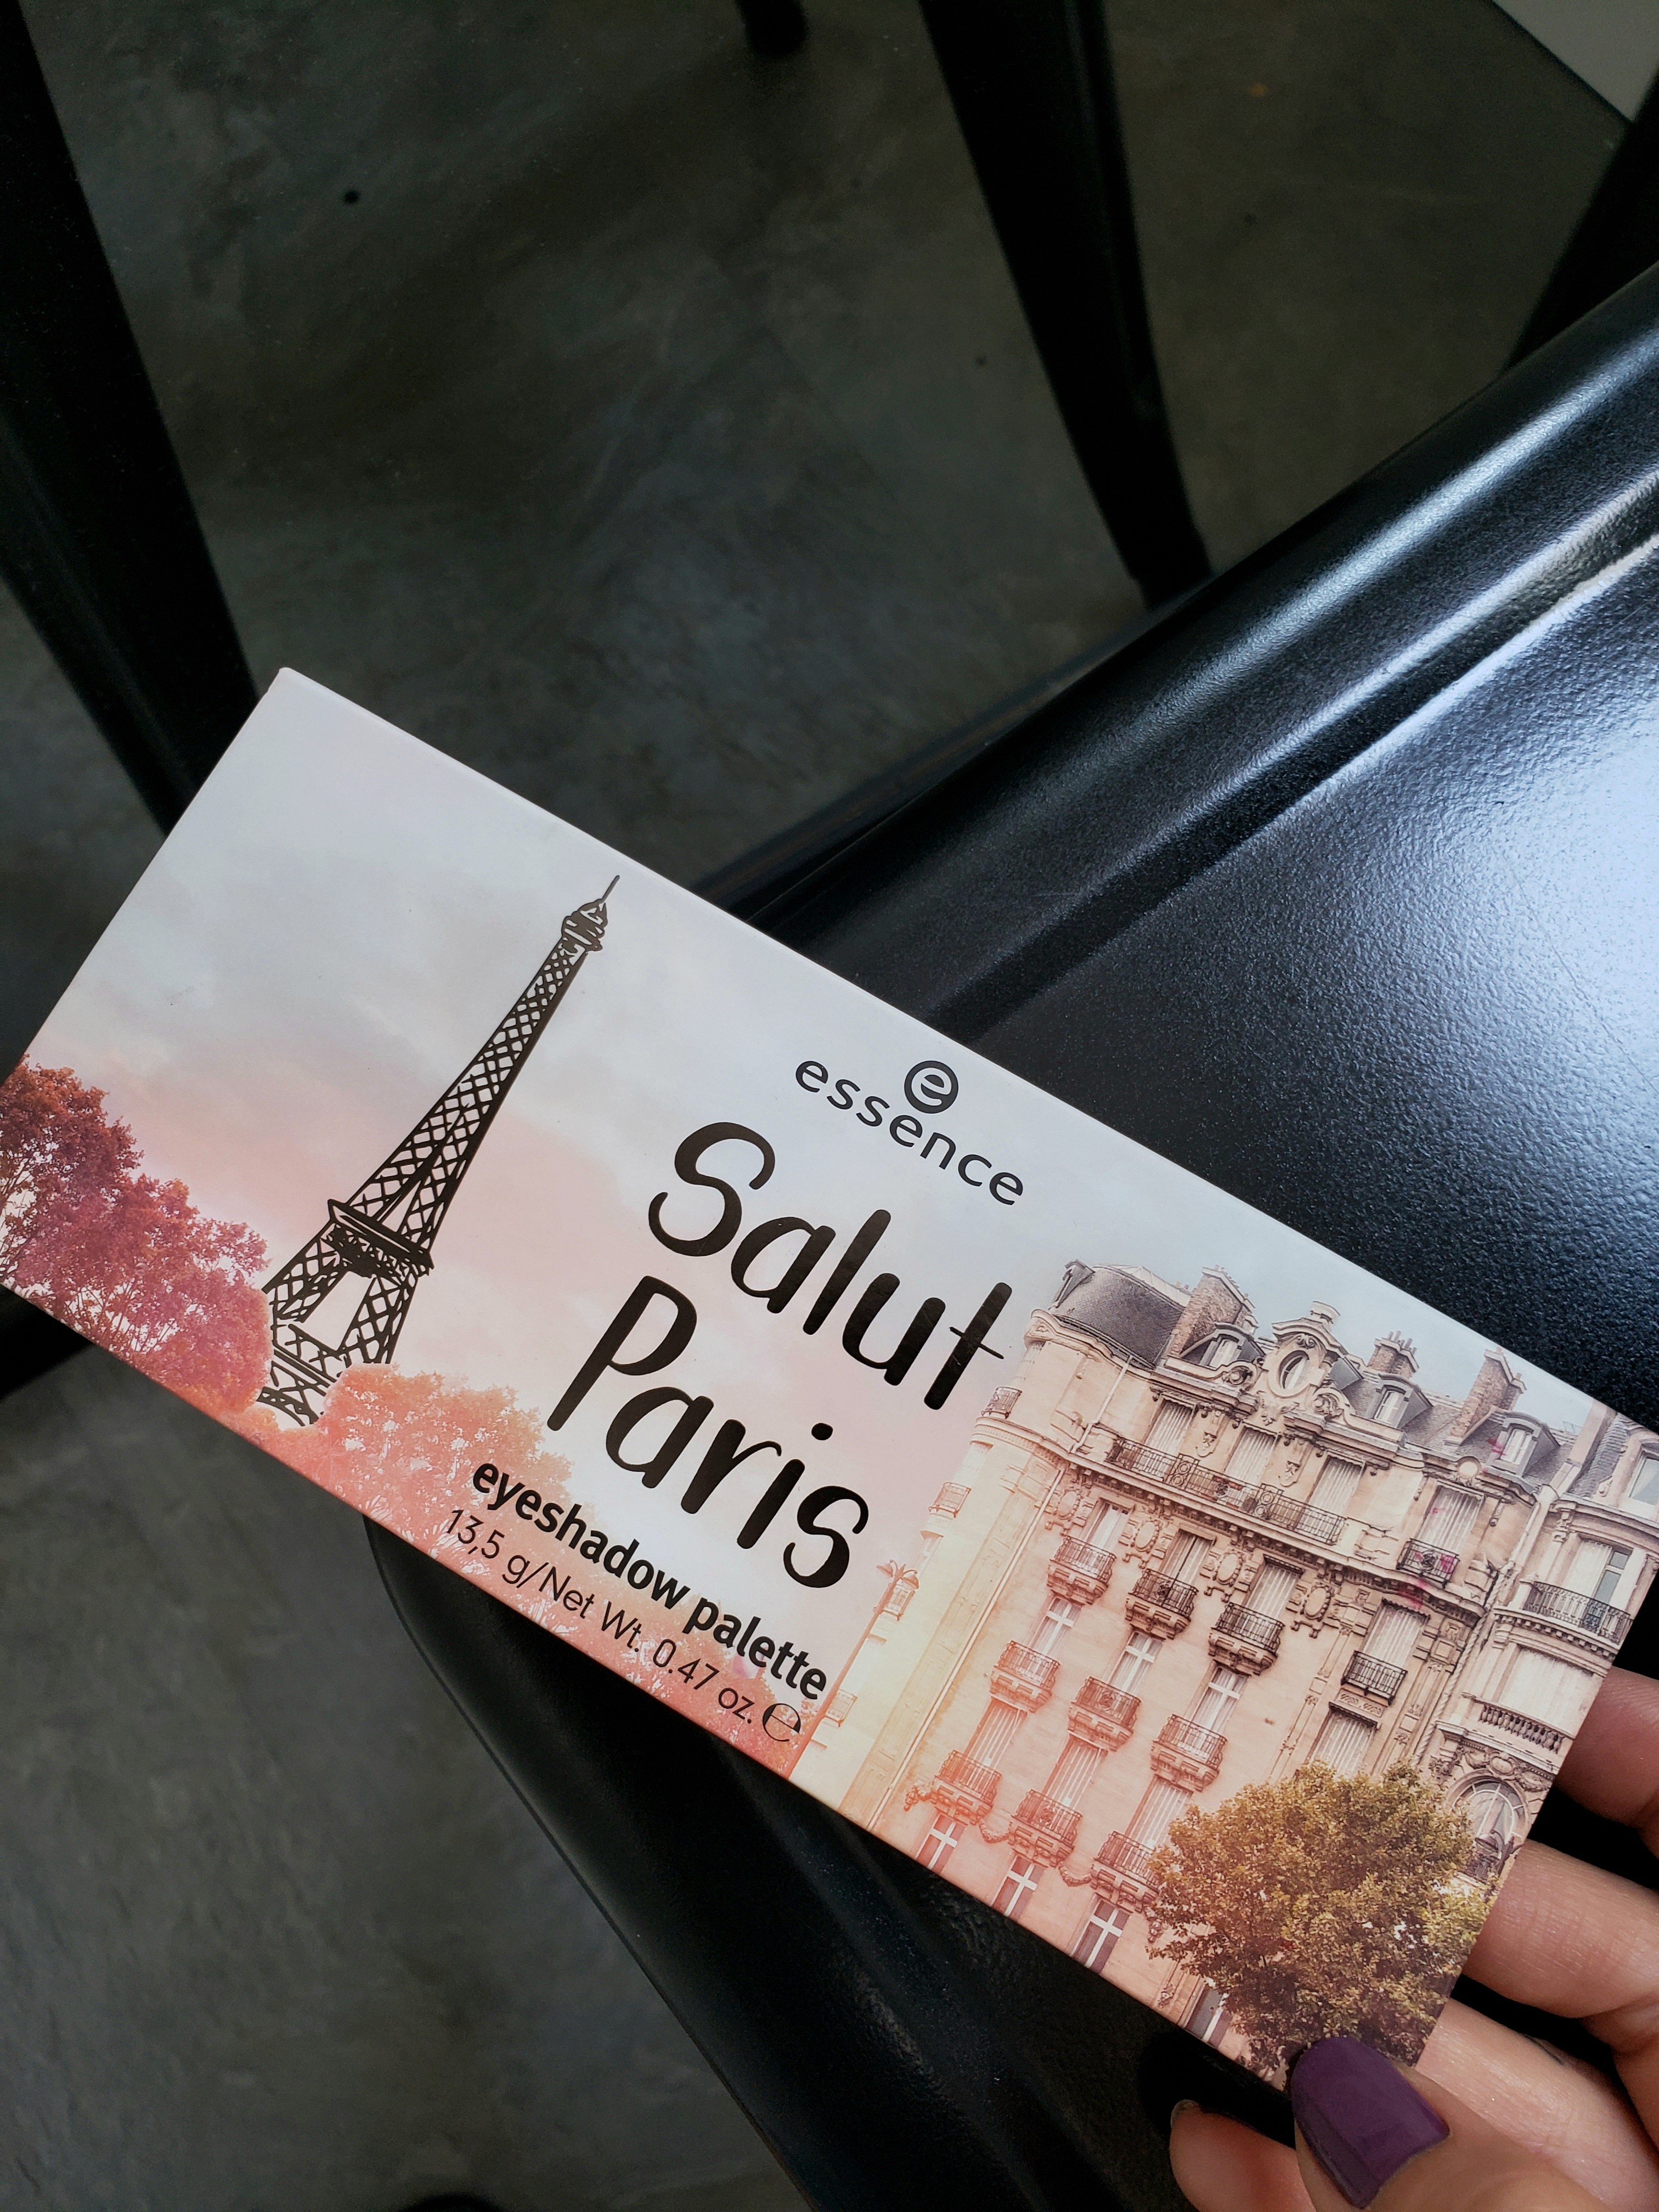 Embalagem da paleta de Sombras Salut Paris, Essence (Foto: arquivo pessoal)